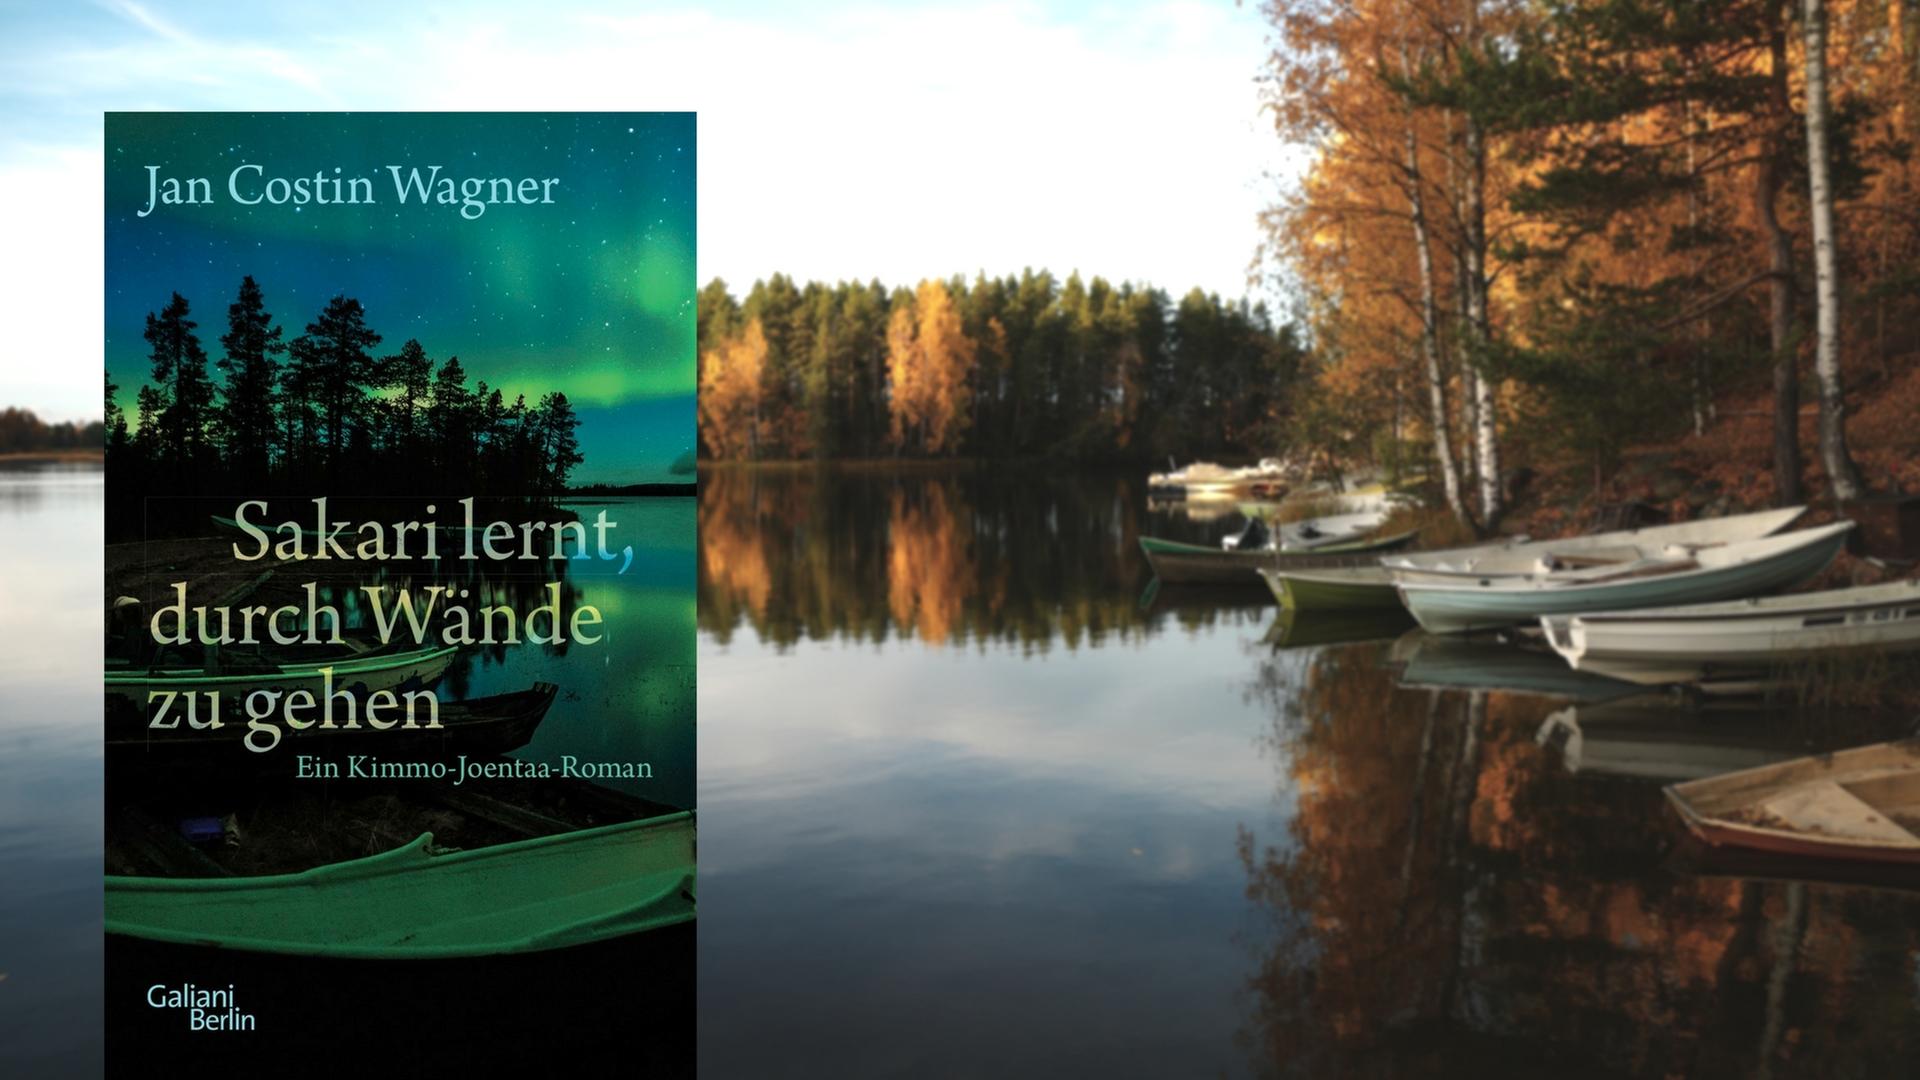 Buchcover "Sakari lernt, durch Wände zu gehen" von Jan Costin Wagner, im Hintergrund ein See in Finnland